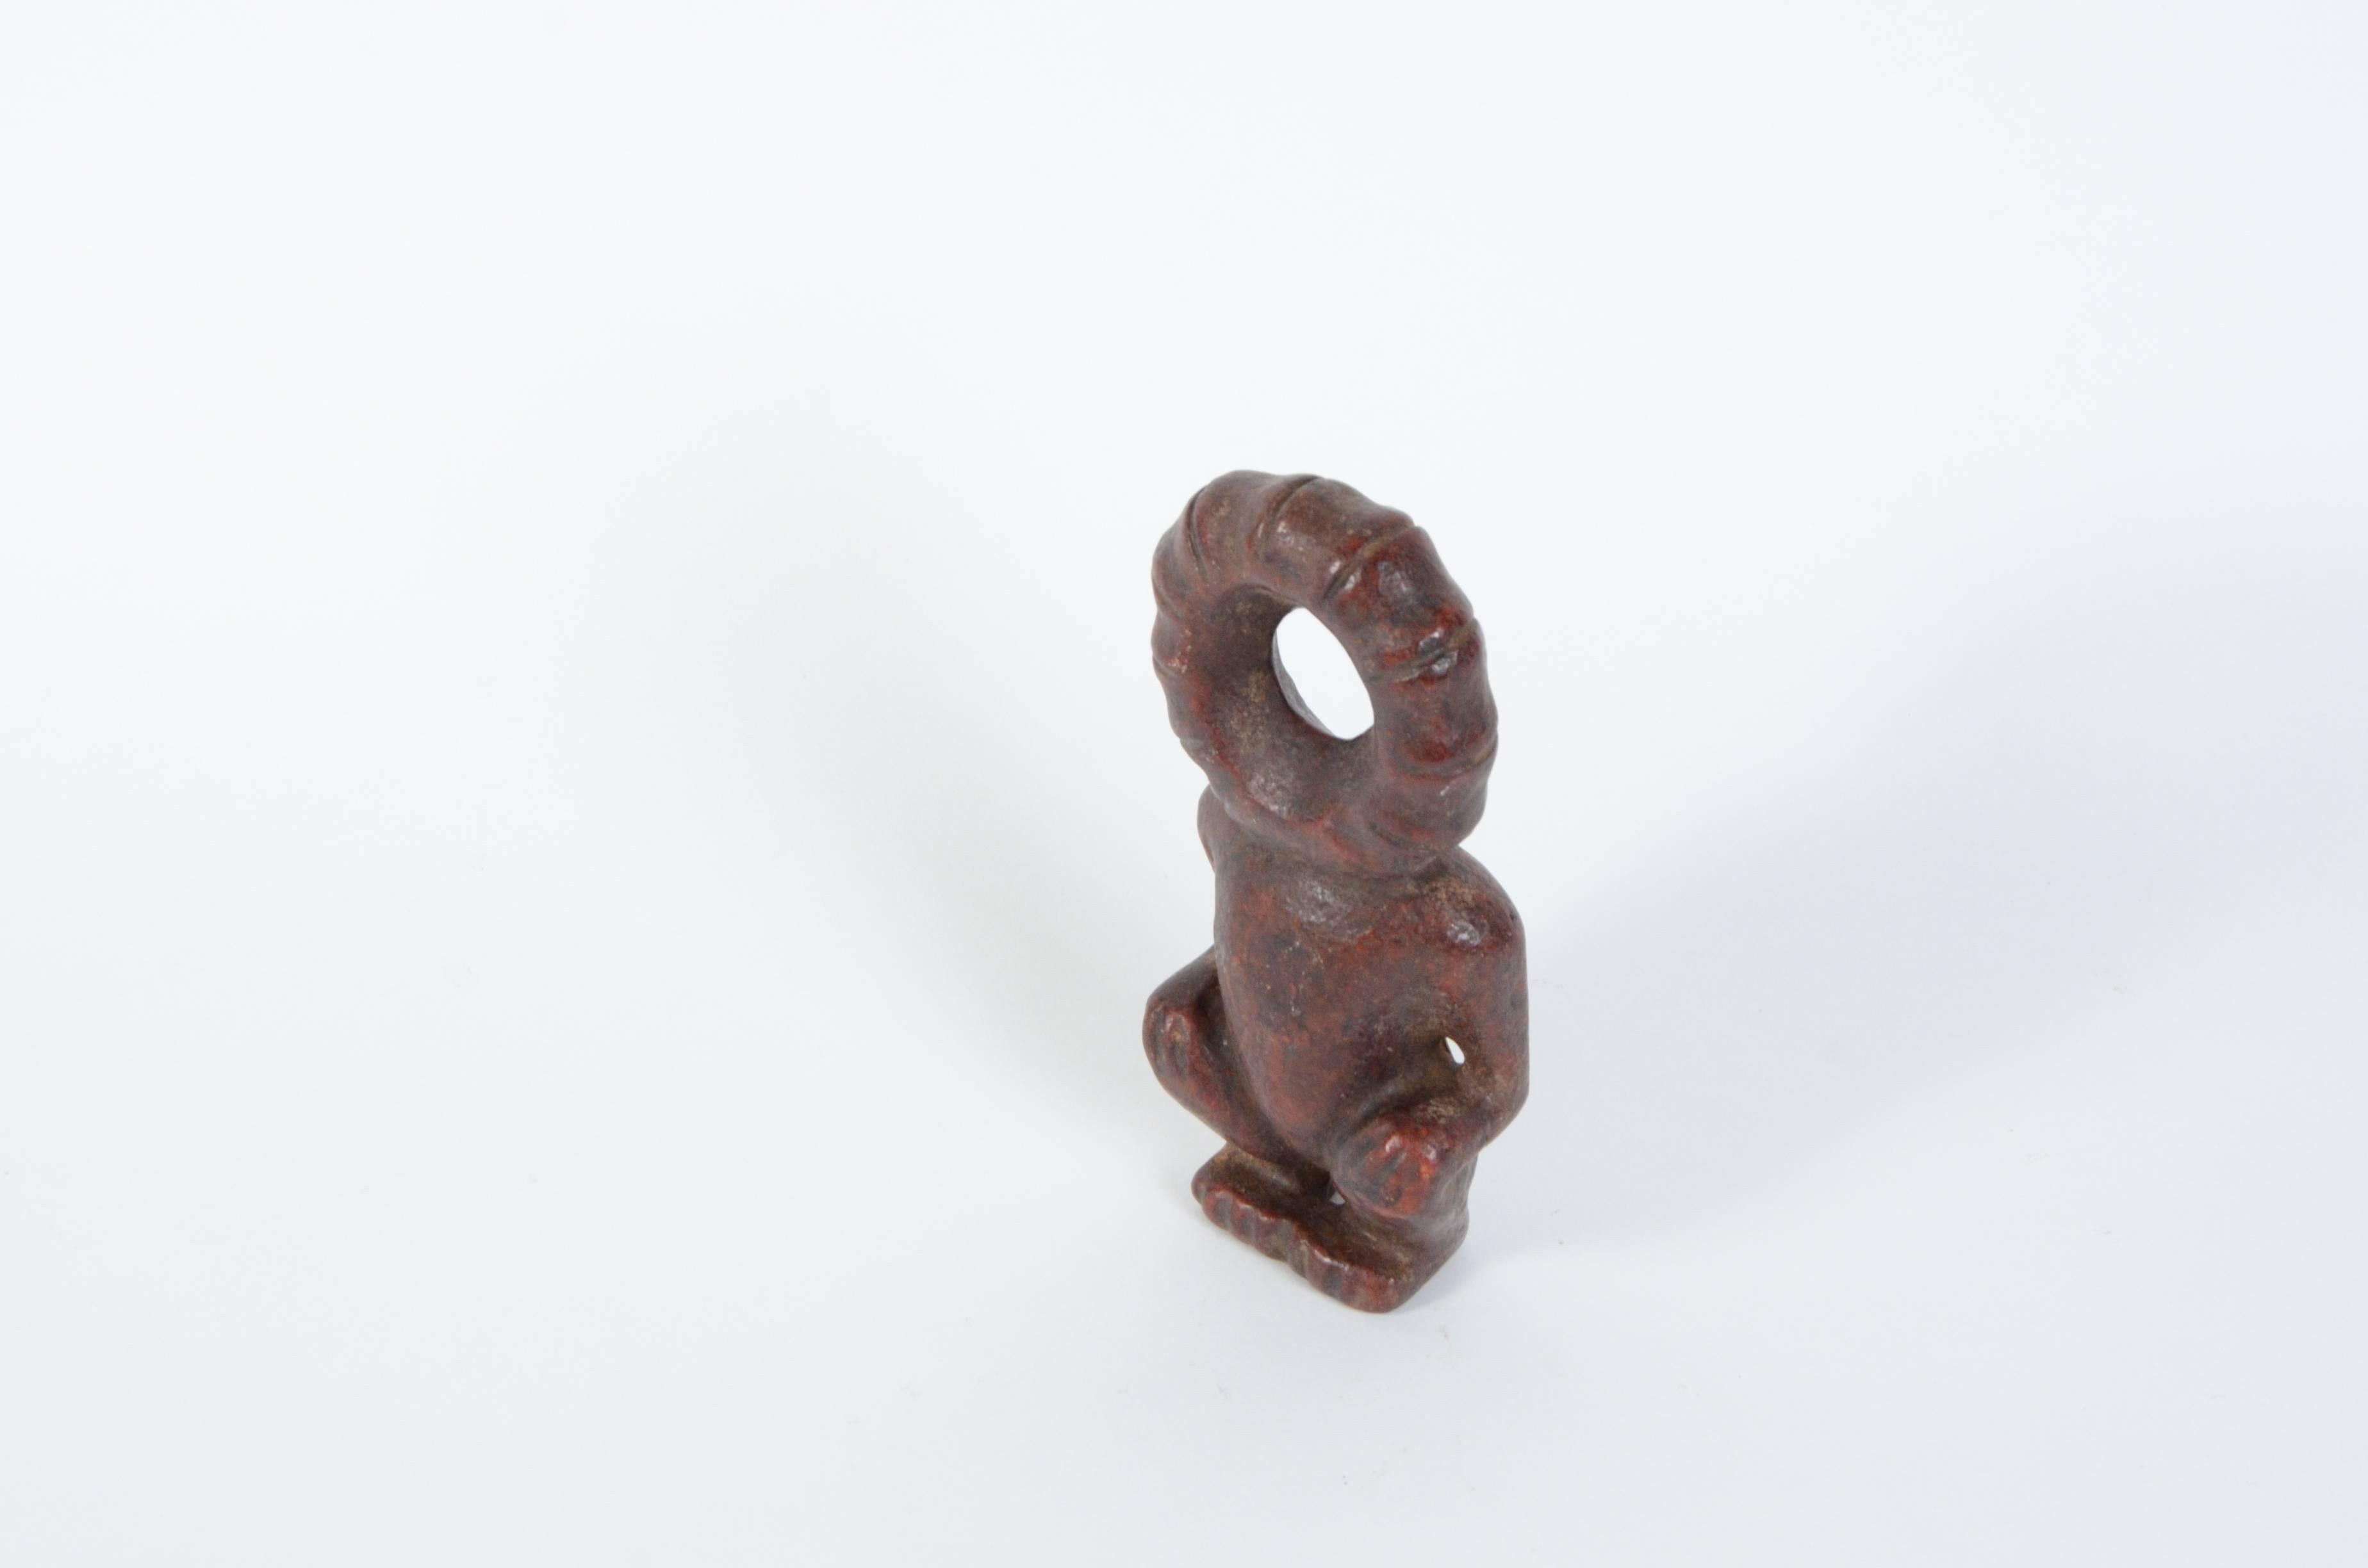 Ein chinesischer Sonnengott aus roter Jade, geschnitzt im Hongshan-Stil. Diese frühen Schnitzereien aus Jade waren typische zeremonielle Grabbeigaben der neolithischen Periode und der Hongshan-Kultur (ca. 3500-3000 v. Chr.).

 